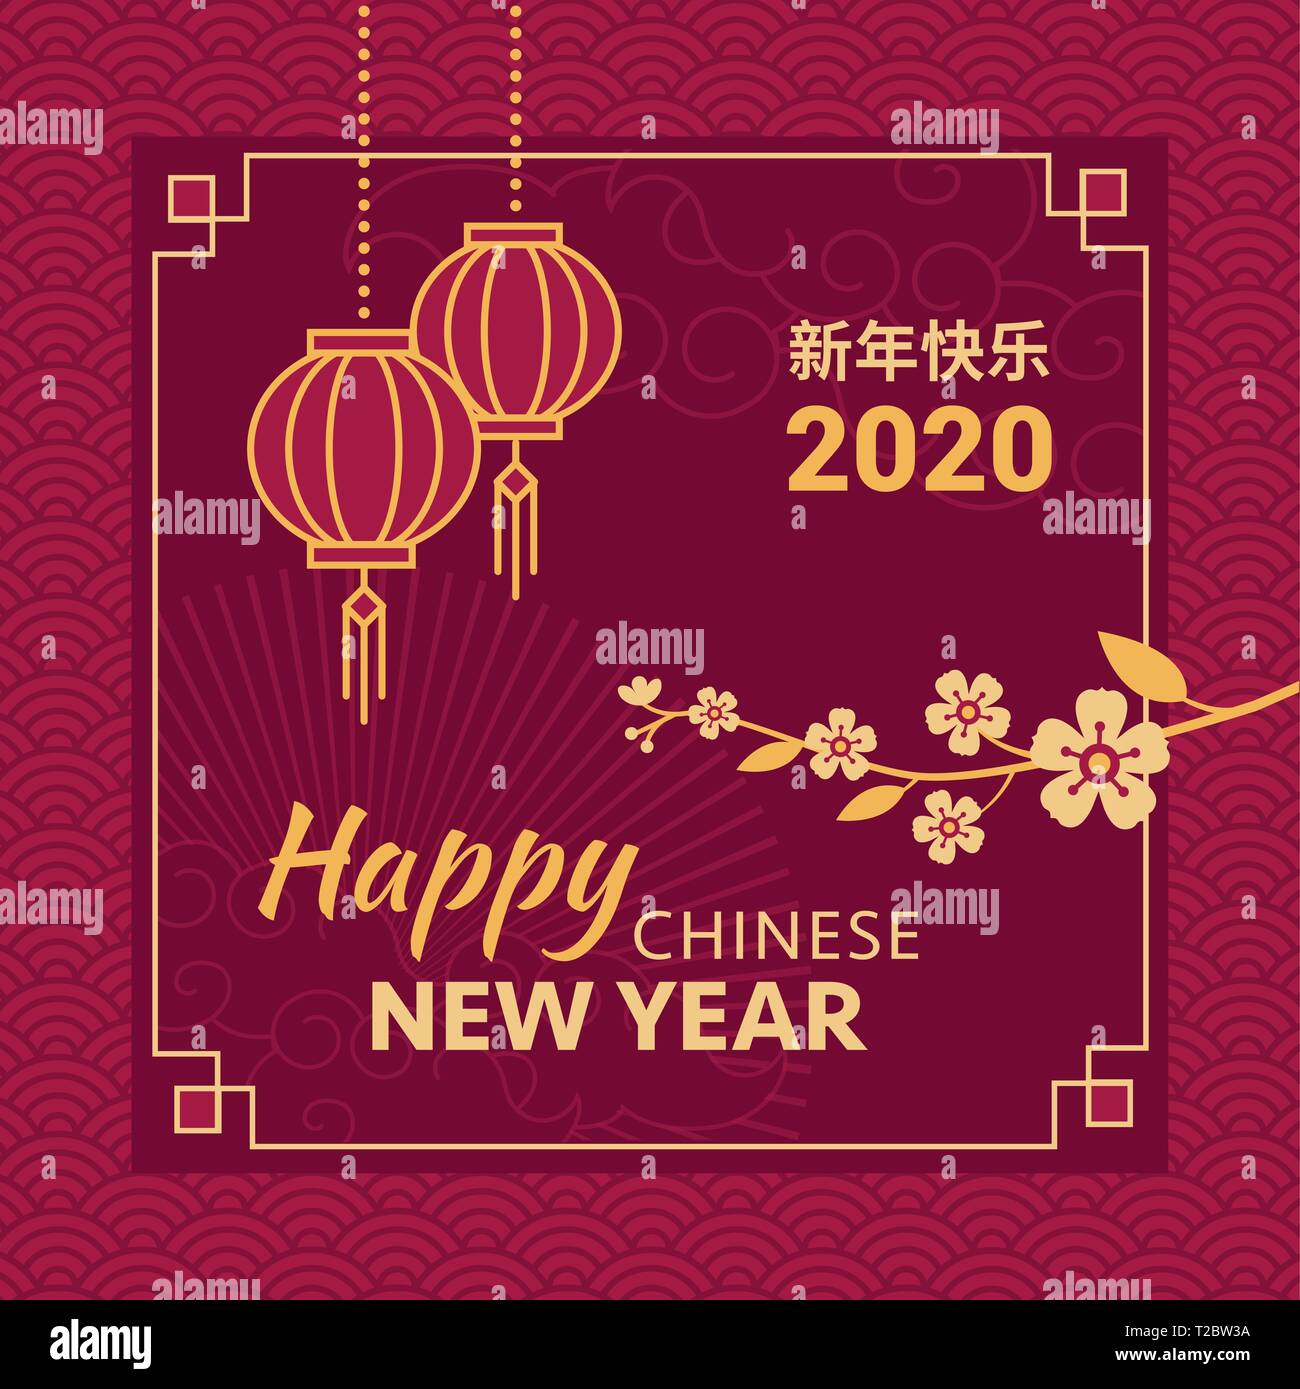 Joyeux Nouvel An chinois carte et médias sociaux poster avec golden blossom fleurs et lampions rouges Illustration de Vecteur